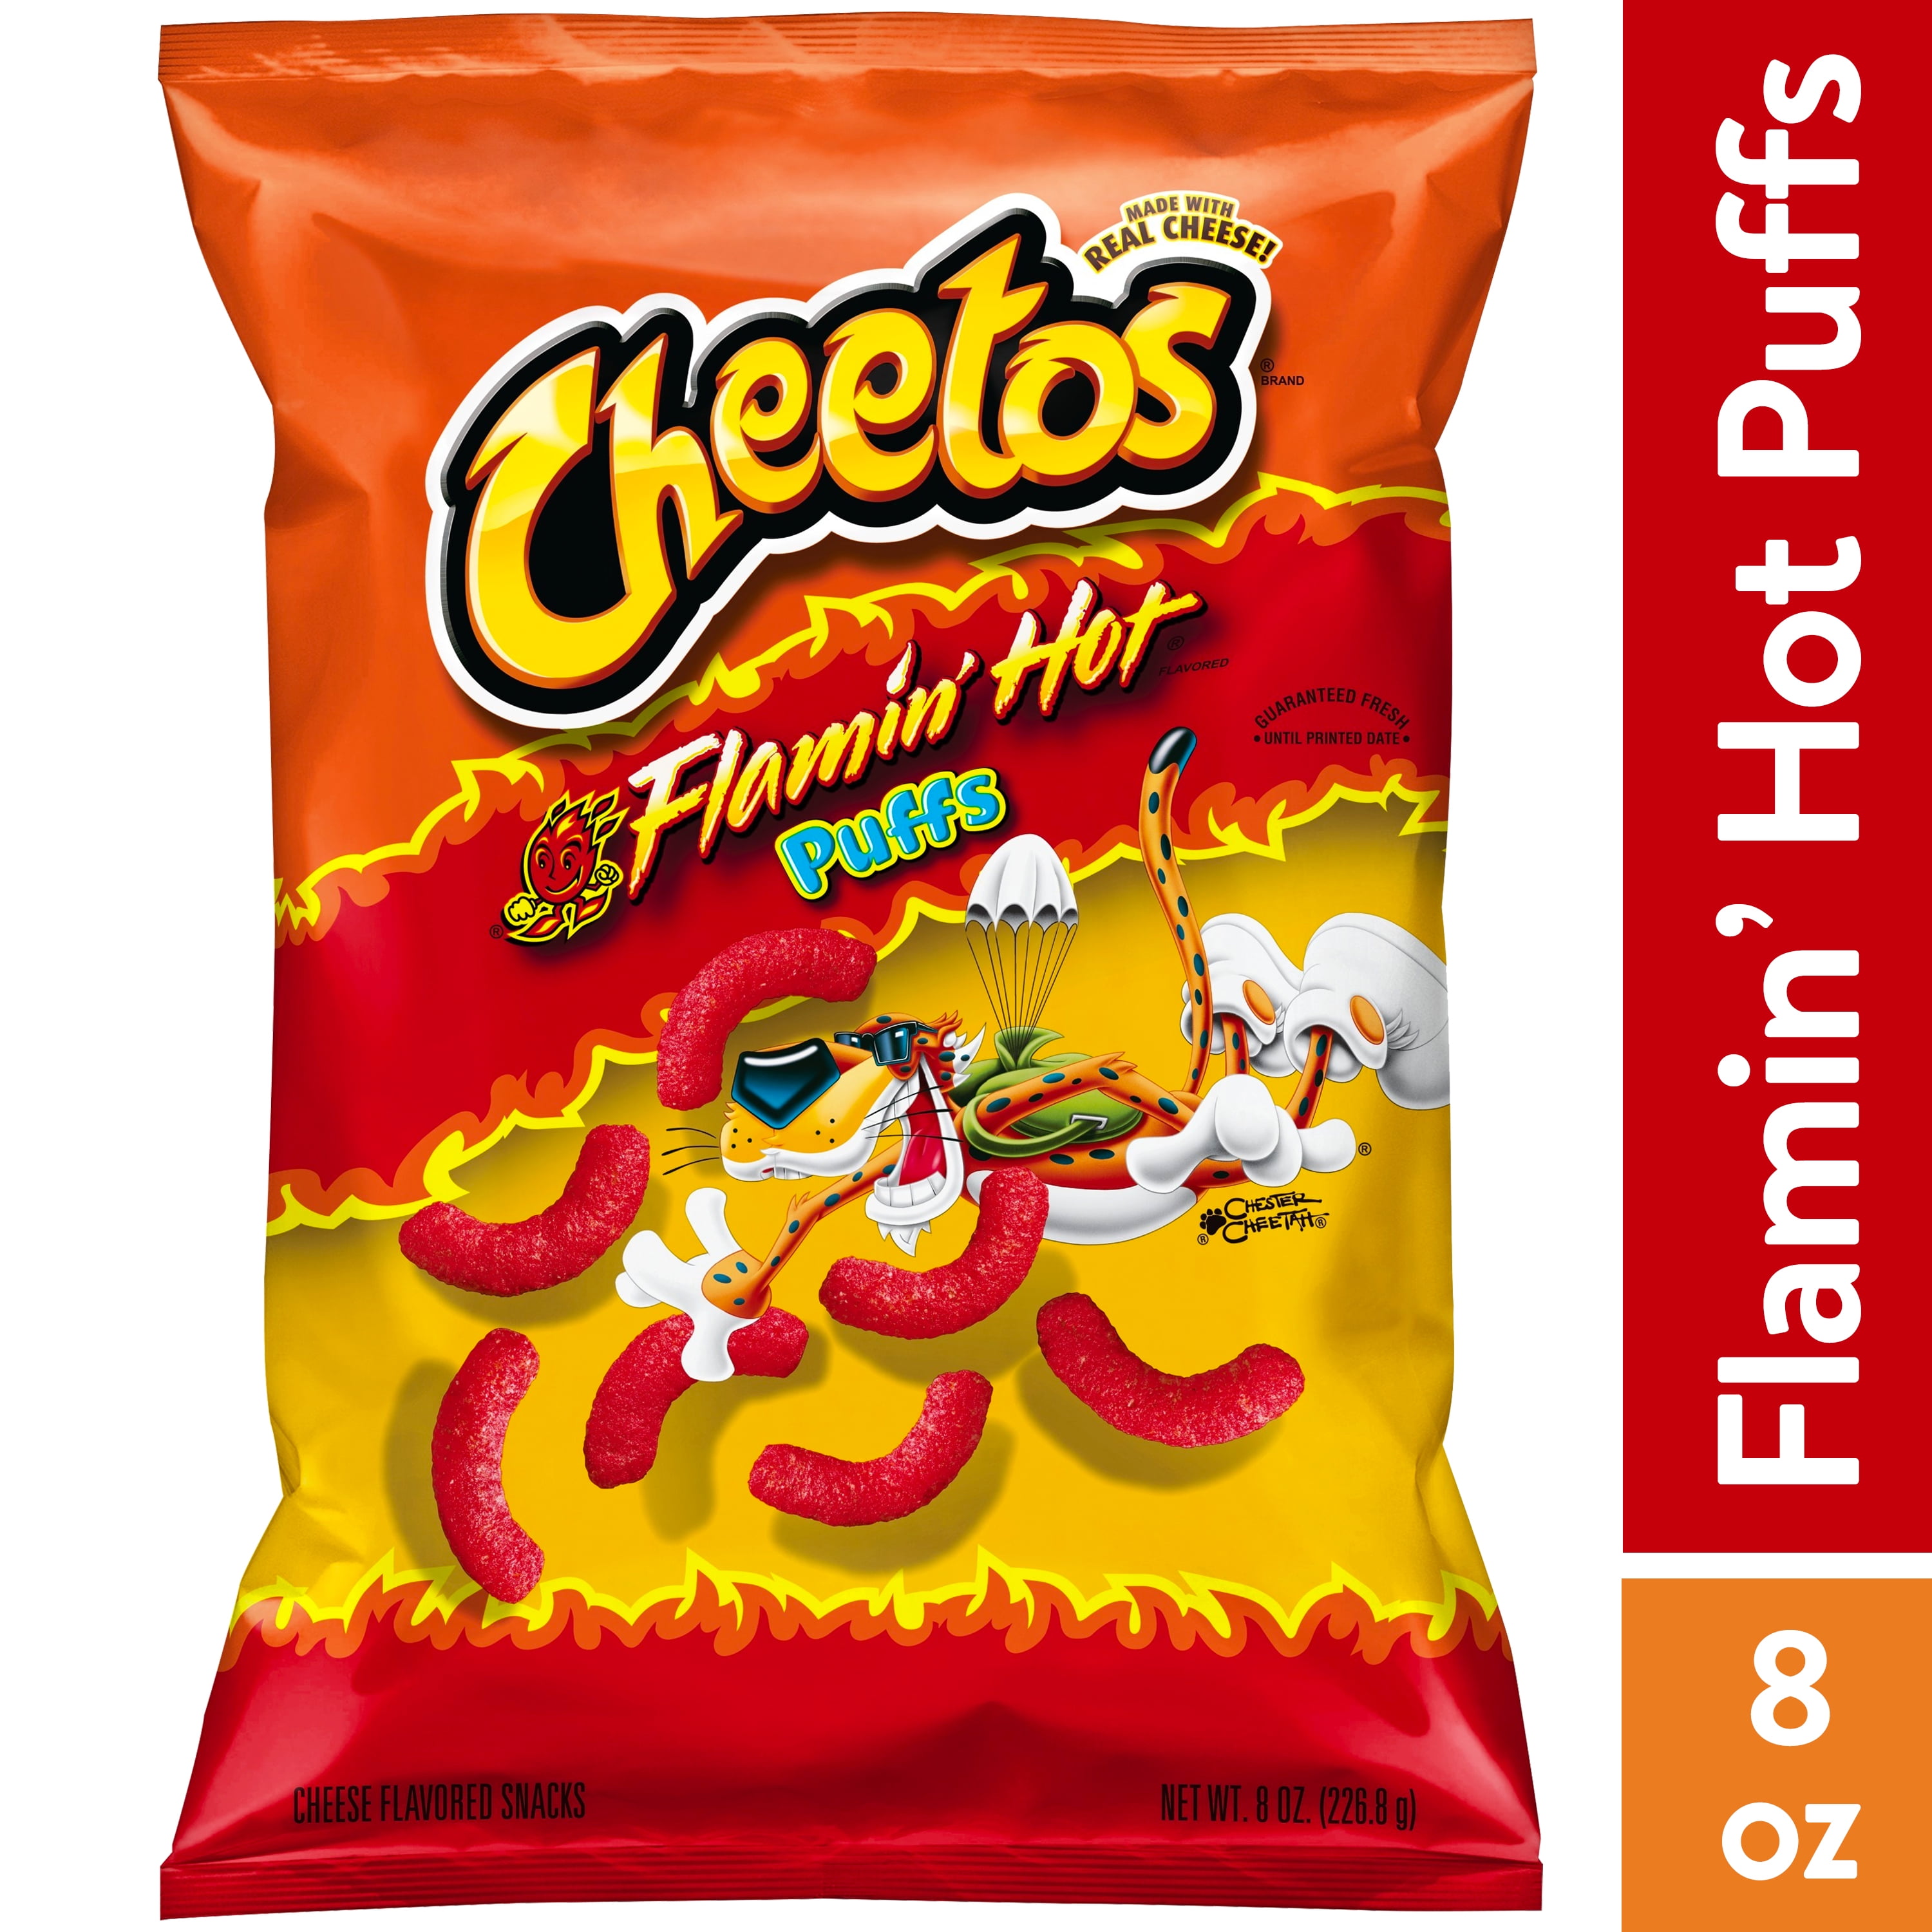 flamin hot cheetos shortage